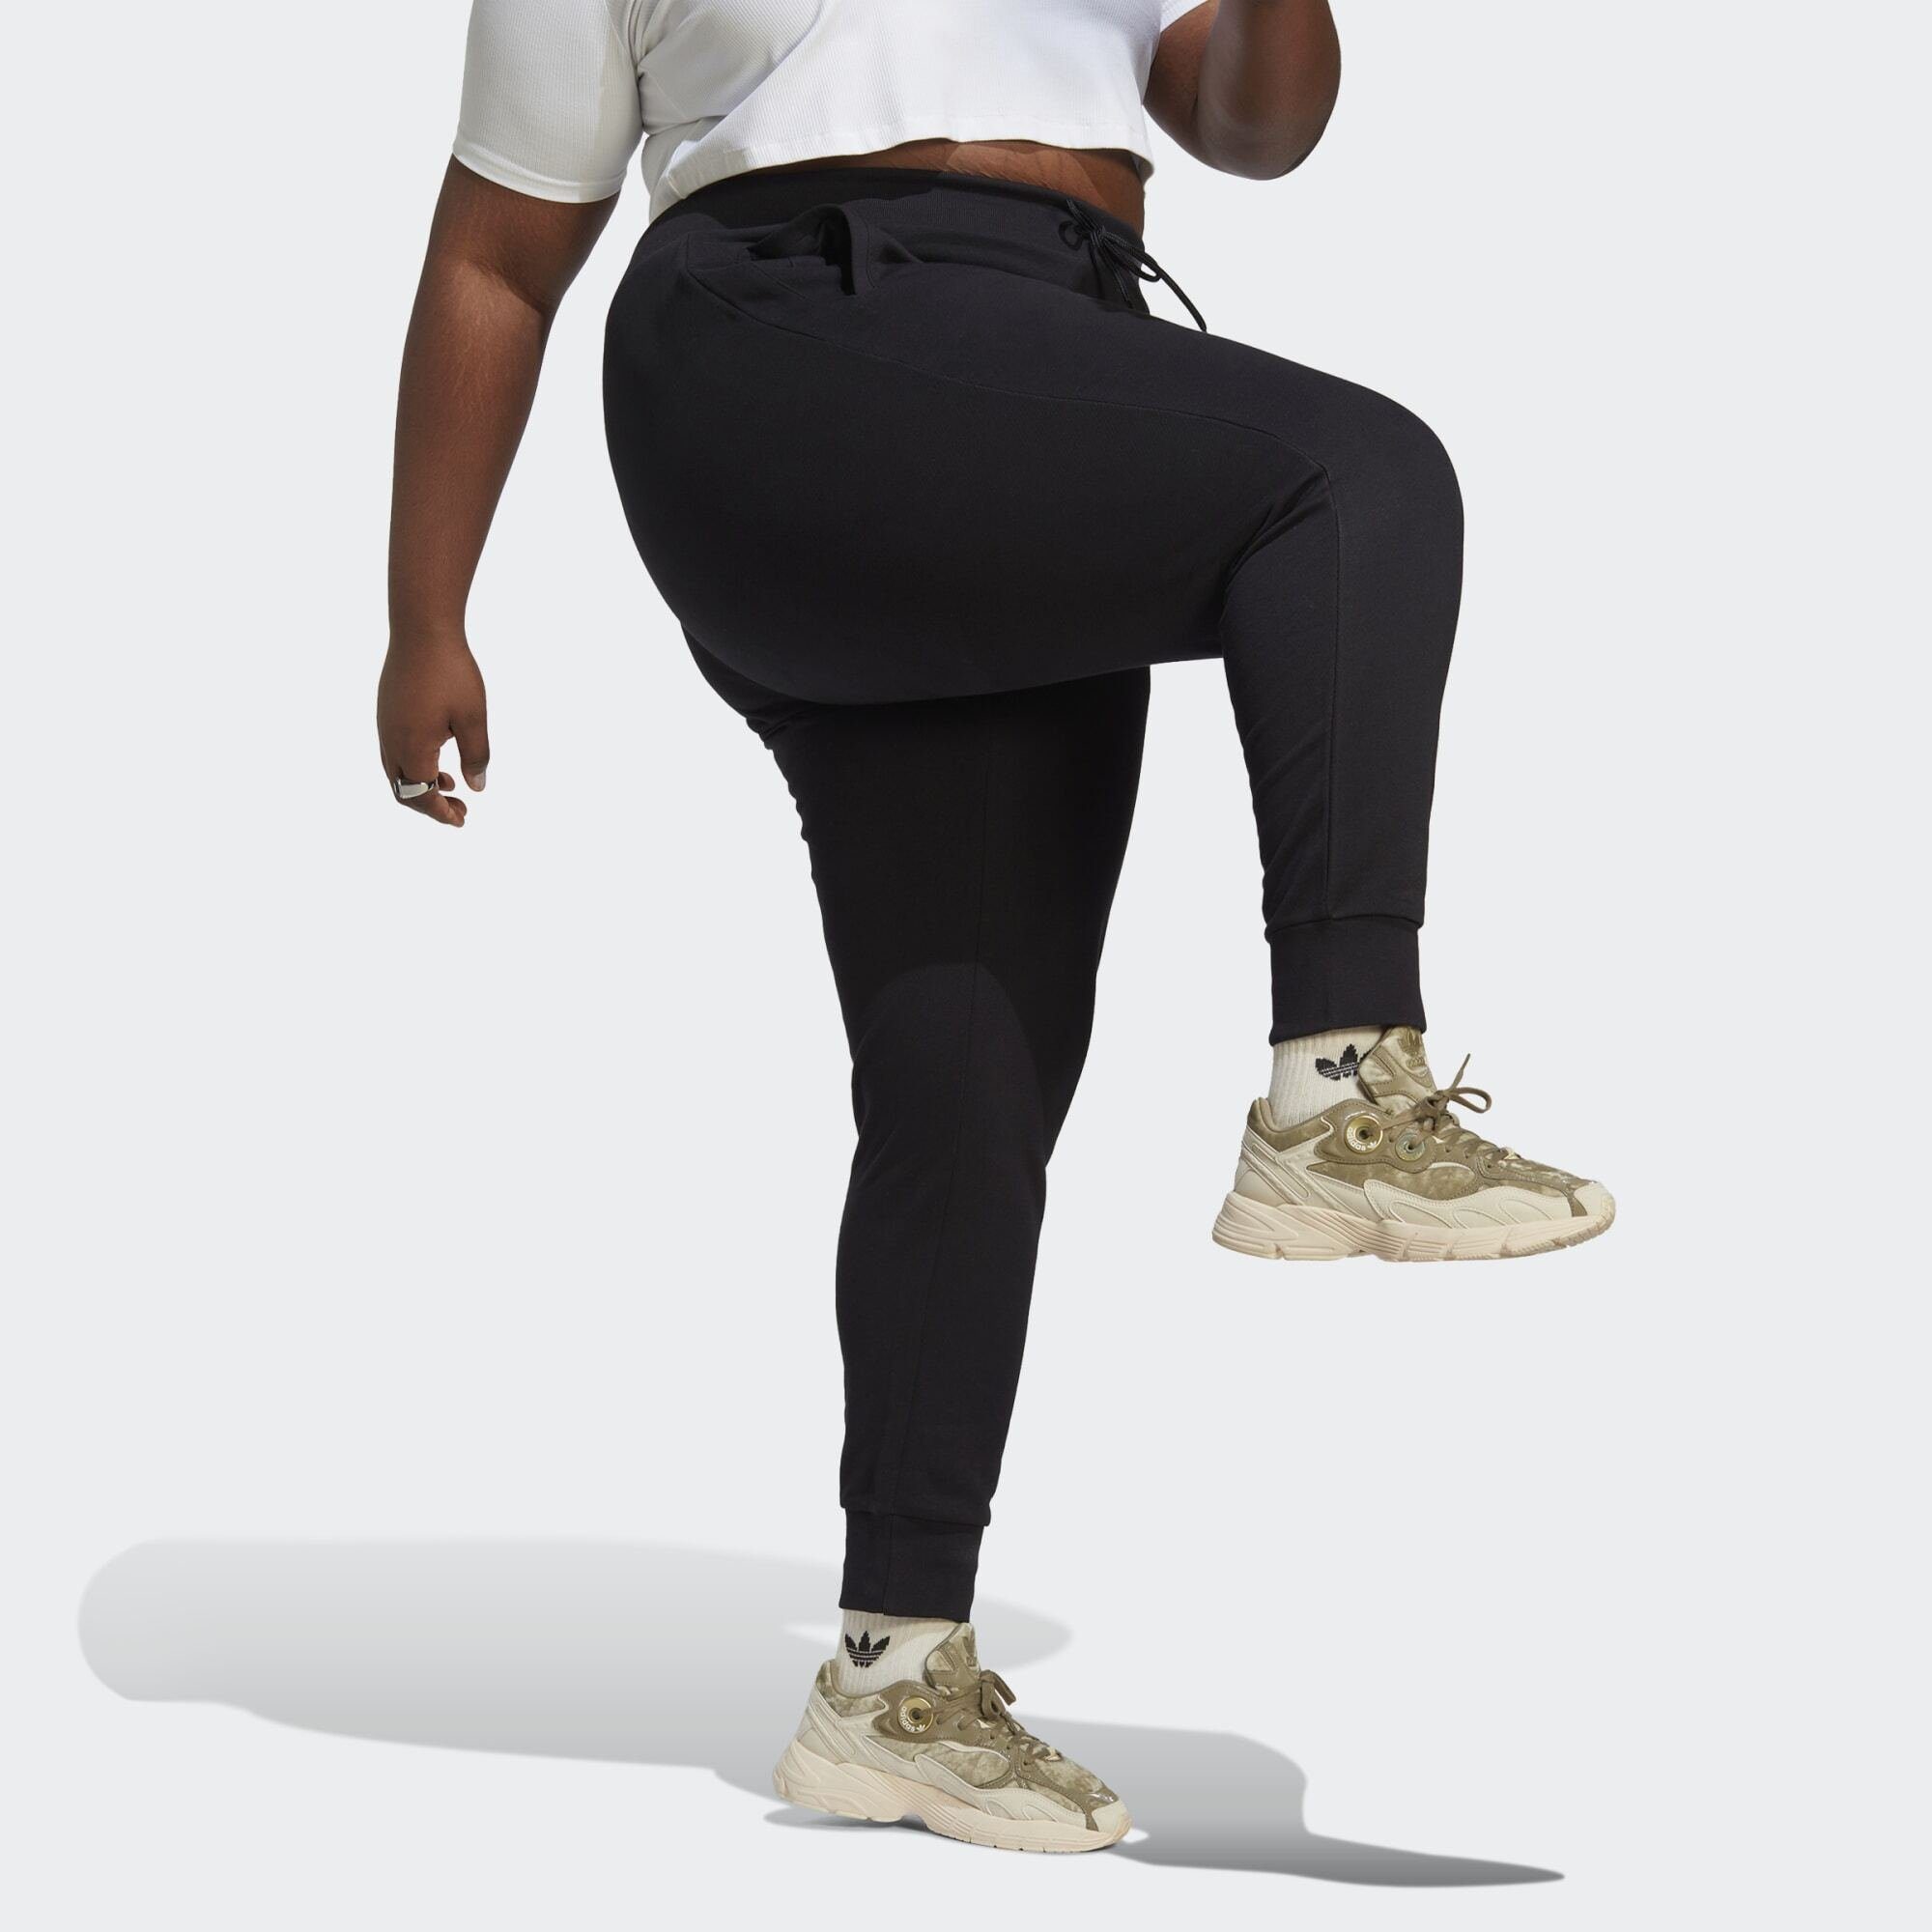 Model adidas Jogginghose, Dieses trägt cm 180 und ist Originals groß Größe